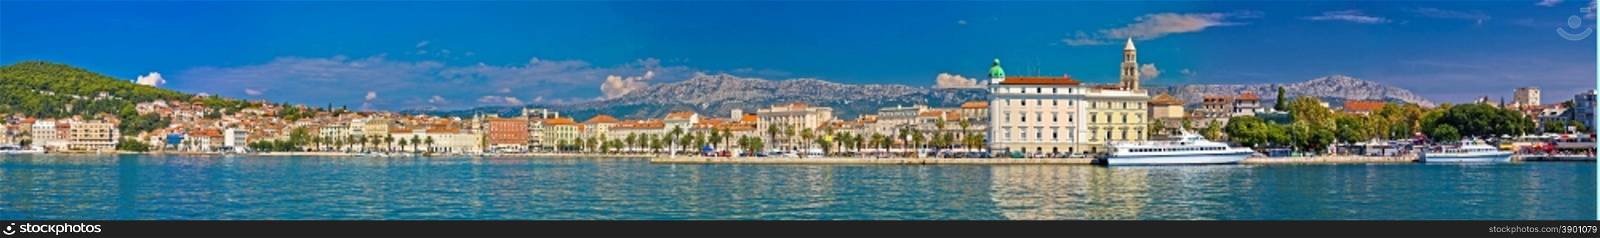 Split waterfront megapanoramic summer view, Dalmatia, Croatia